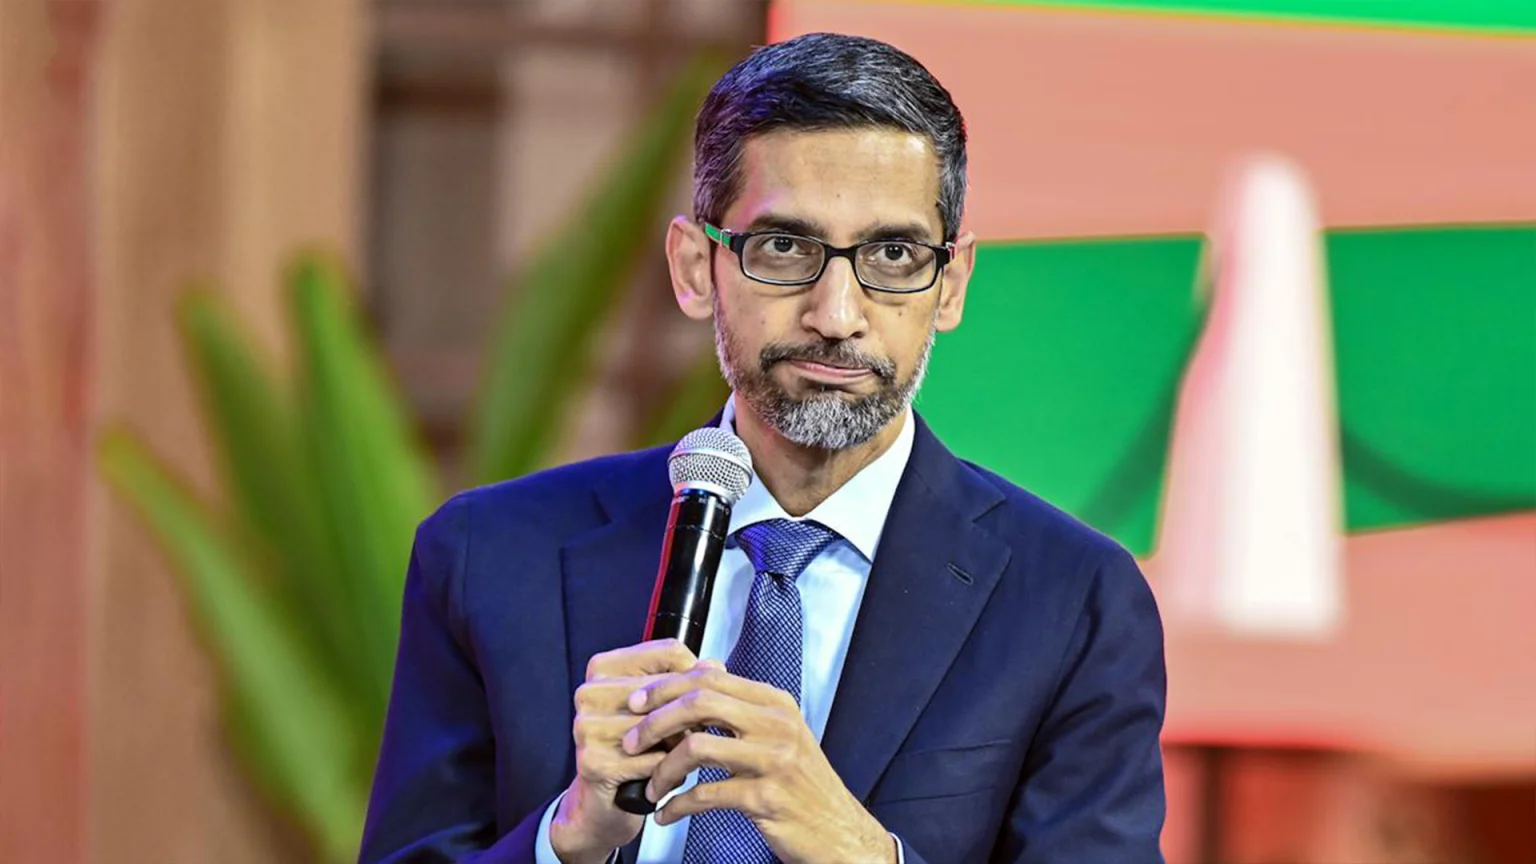 Google CEO'su Sundar Pichai, çalışanlarını daha fazla işten çıkarma olacağına dair uyardı